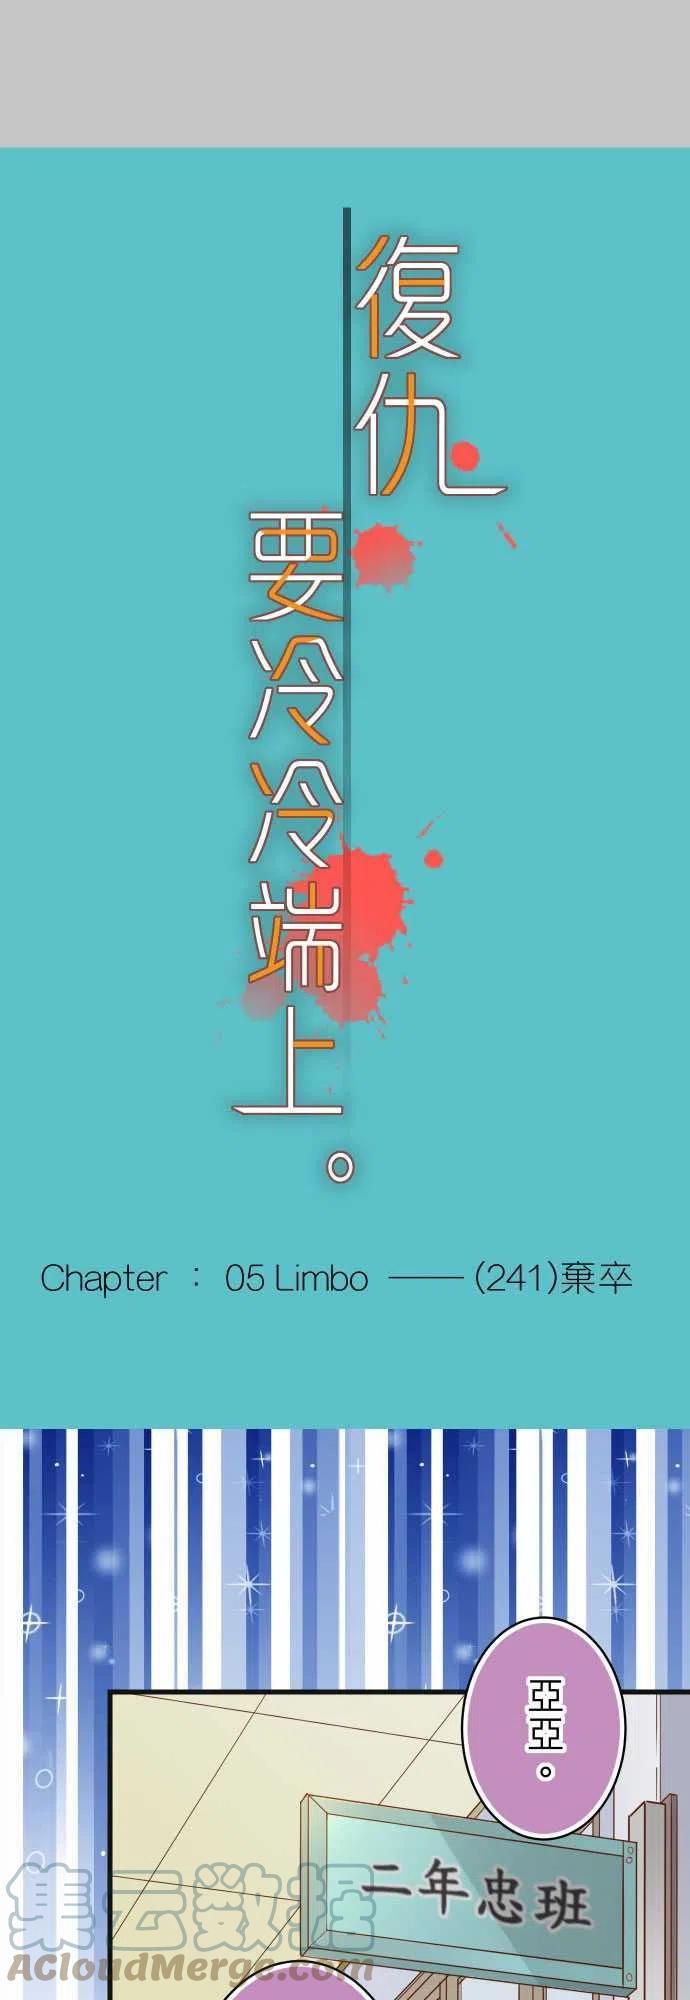 第五章 Limbo 241 弃卒2